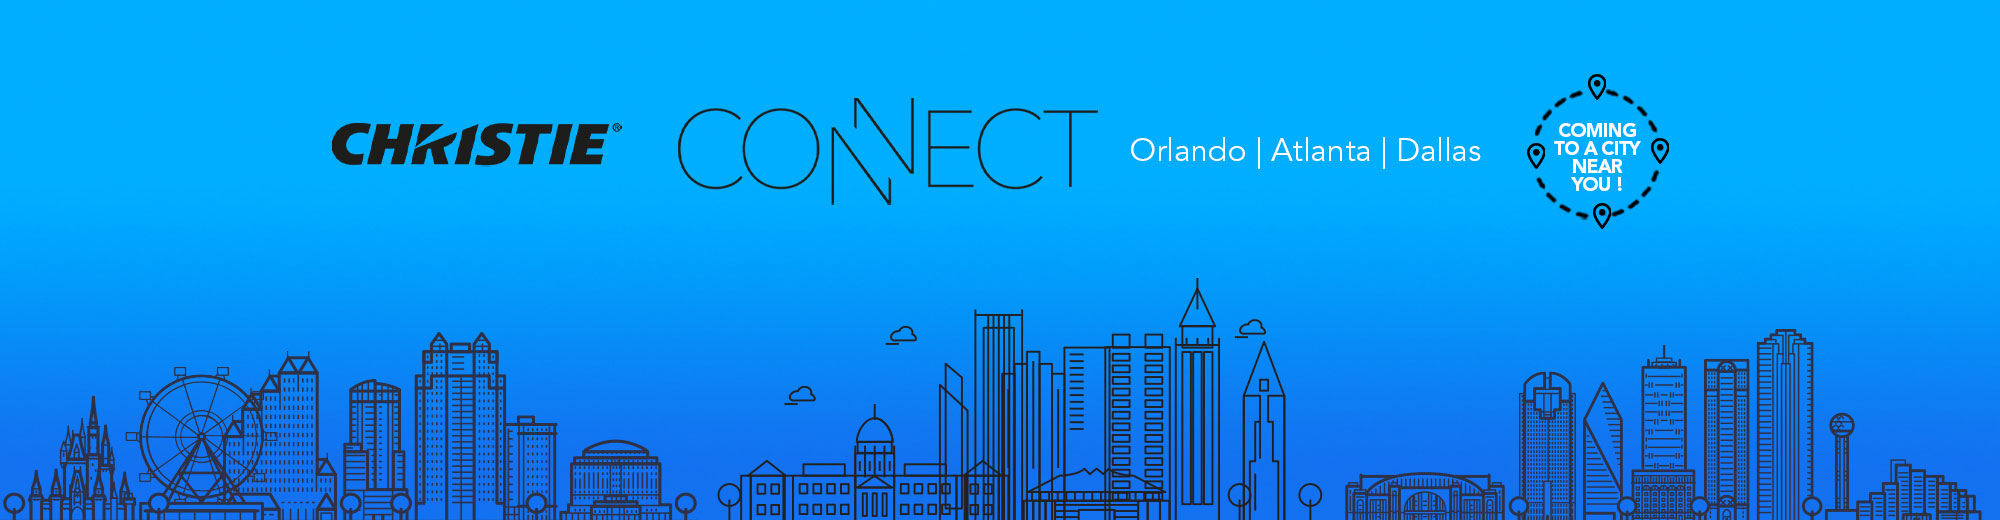 Christie Connect 2022 - Come see us in Orlando, Atlanta, and Dallas